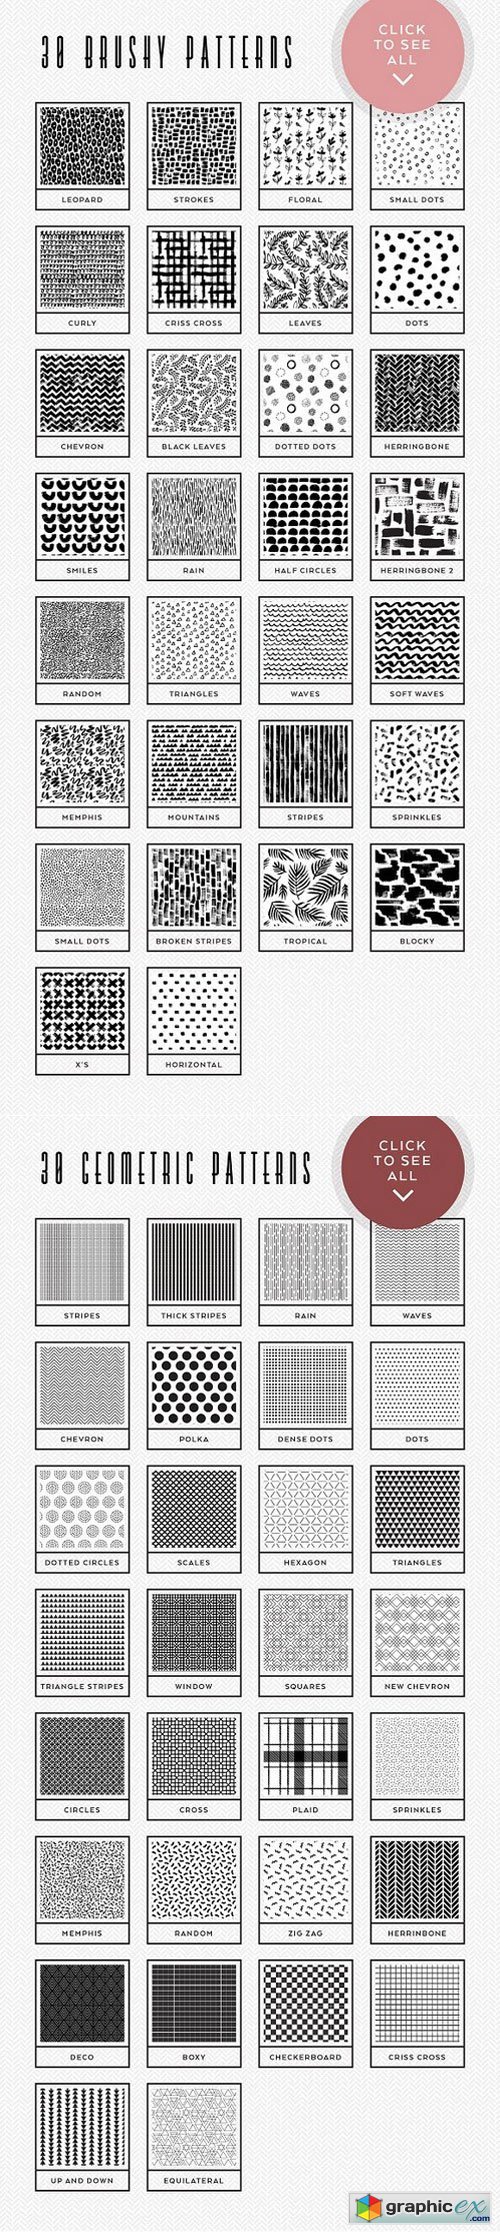 80 Essential Patterns